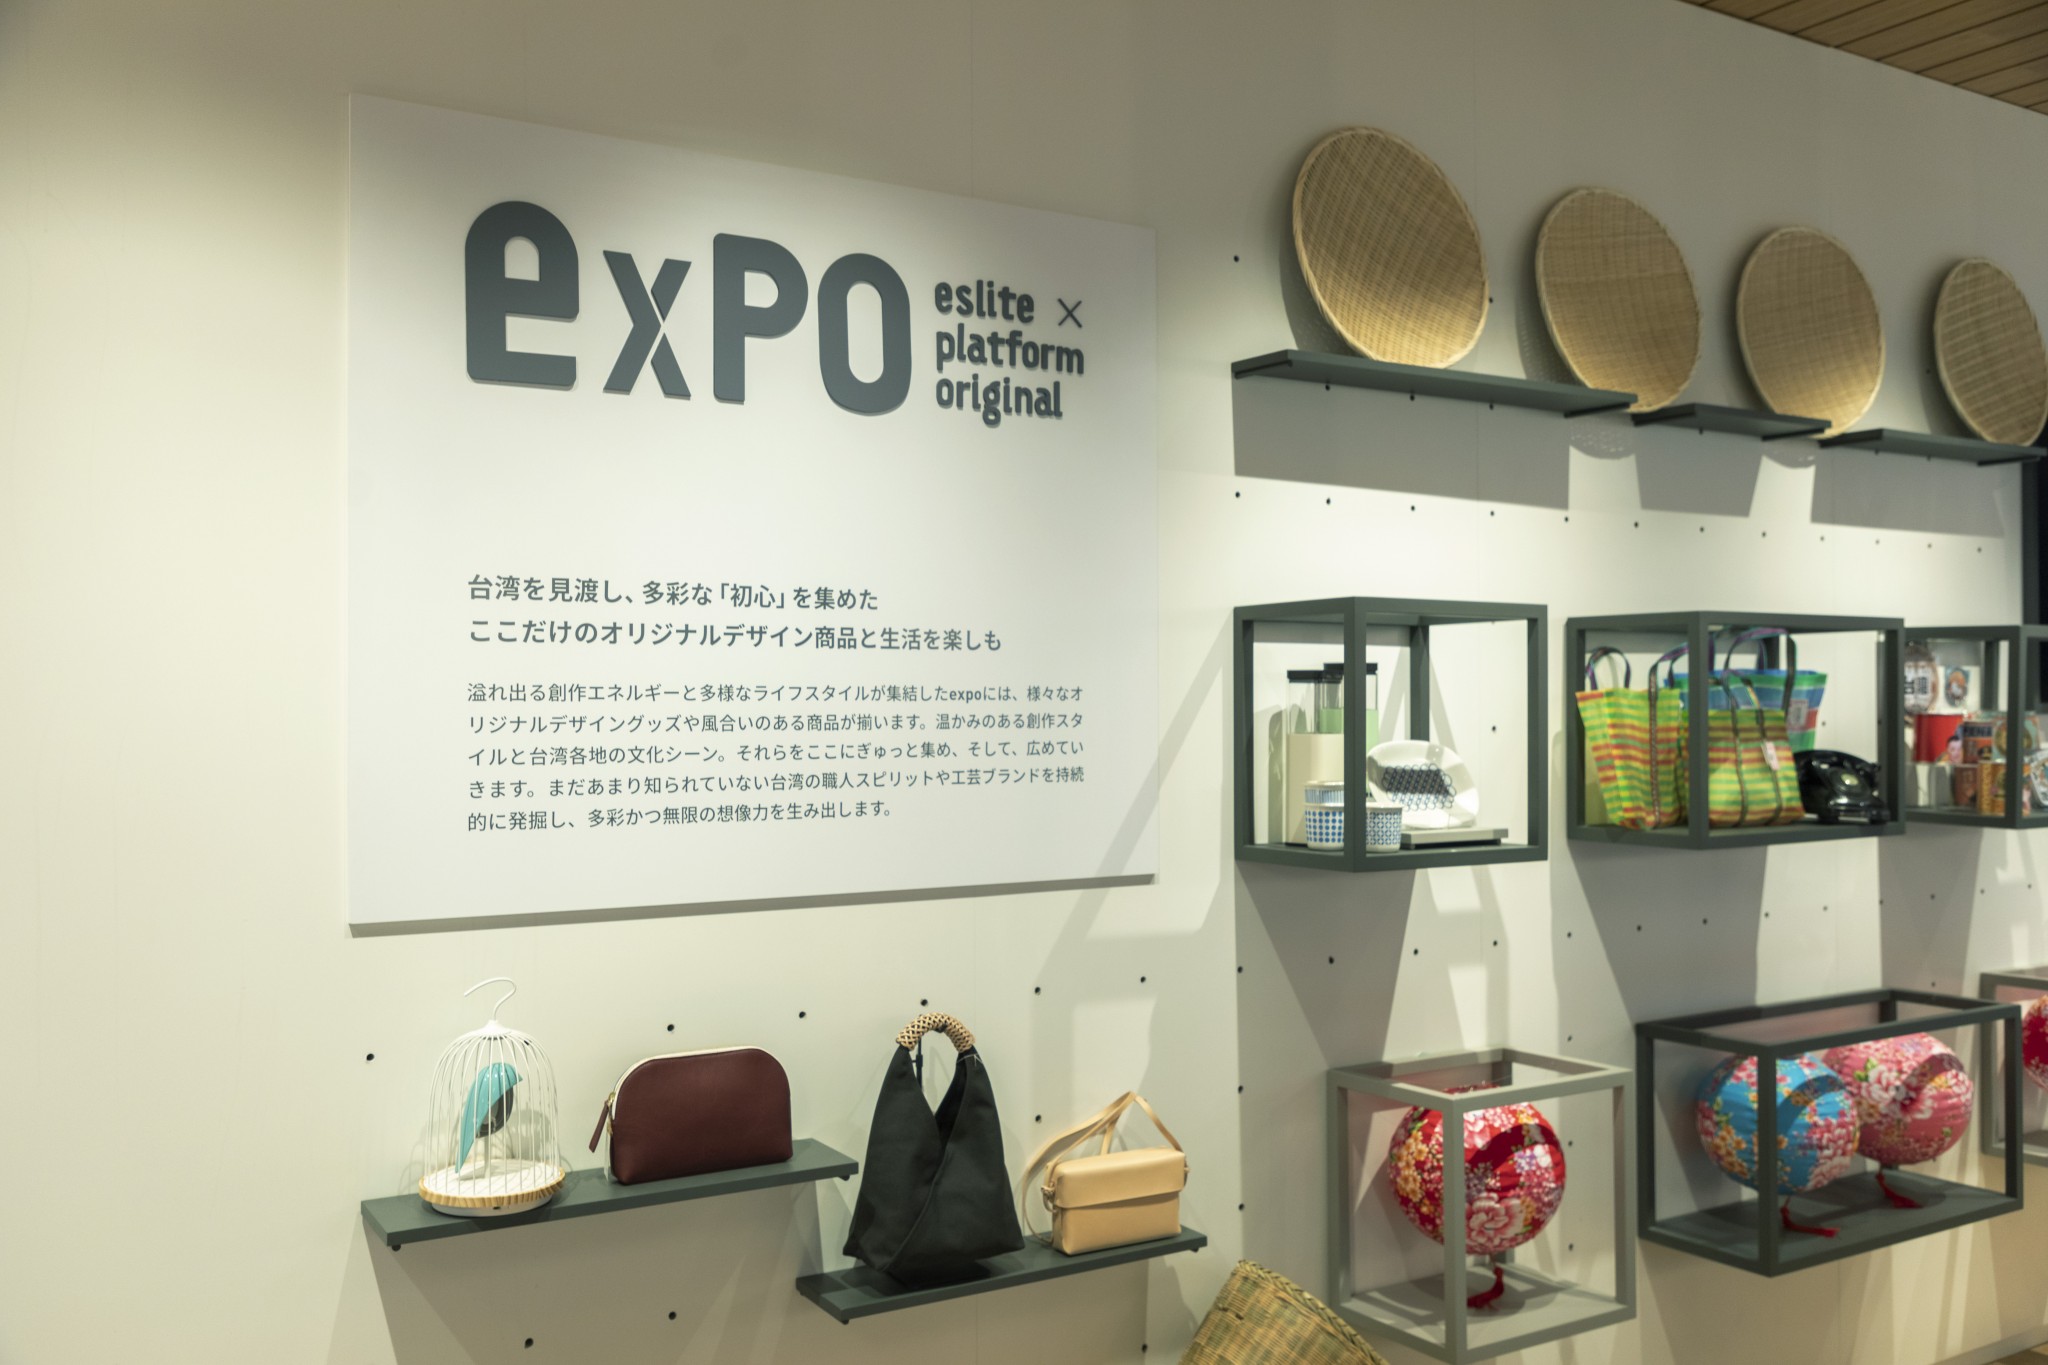 台湾でいくつものデザインブランドを発掘・支援してきたインキュベー ションプロジェクト「誠品生活expo」。ここでも同様に、日台の新進気 鋭のブランドを紹介。バッグや器、雑貨など、キュートなアイテムが勢 ぞろい。ほか、漢方ライフスタイルブランド〈DAYLILY〉、台湾茶からつ くられた香水ブランド〈P.Seven茶香水〉などのショップインショップも。